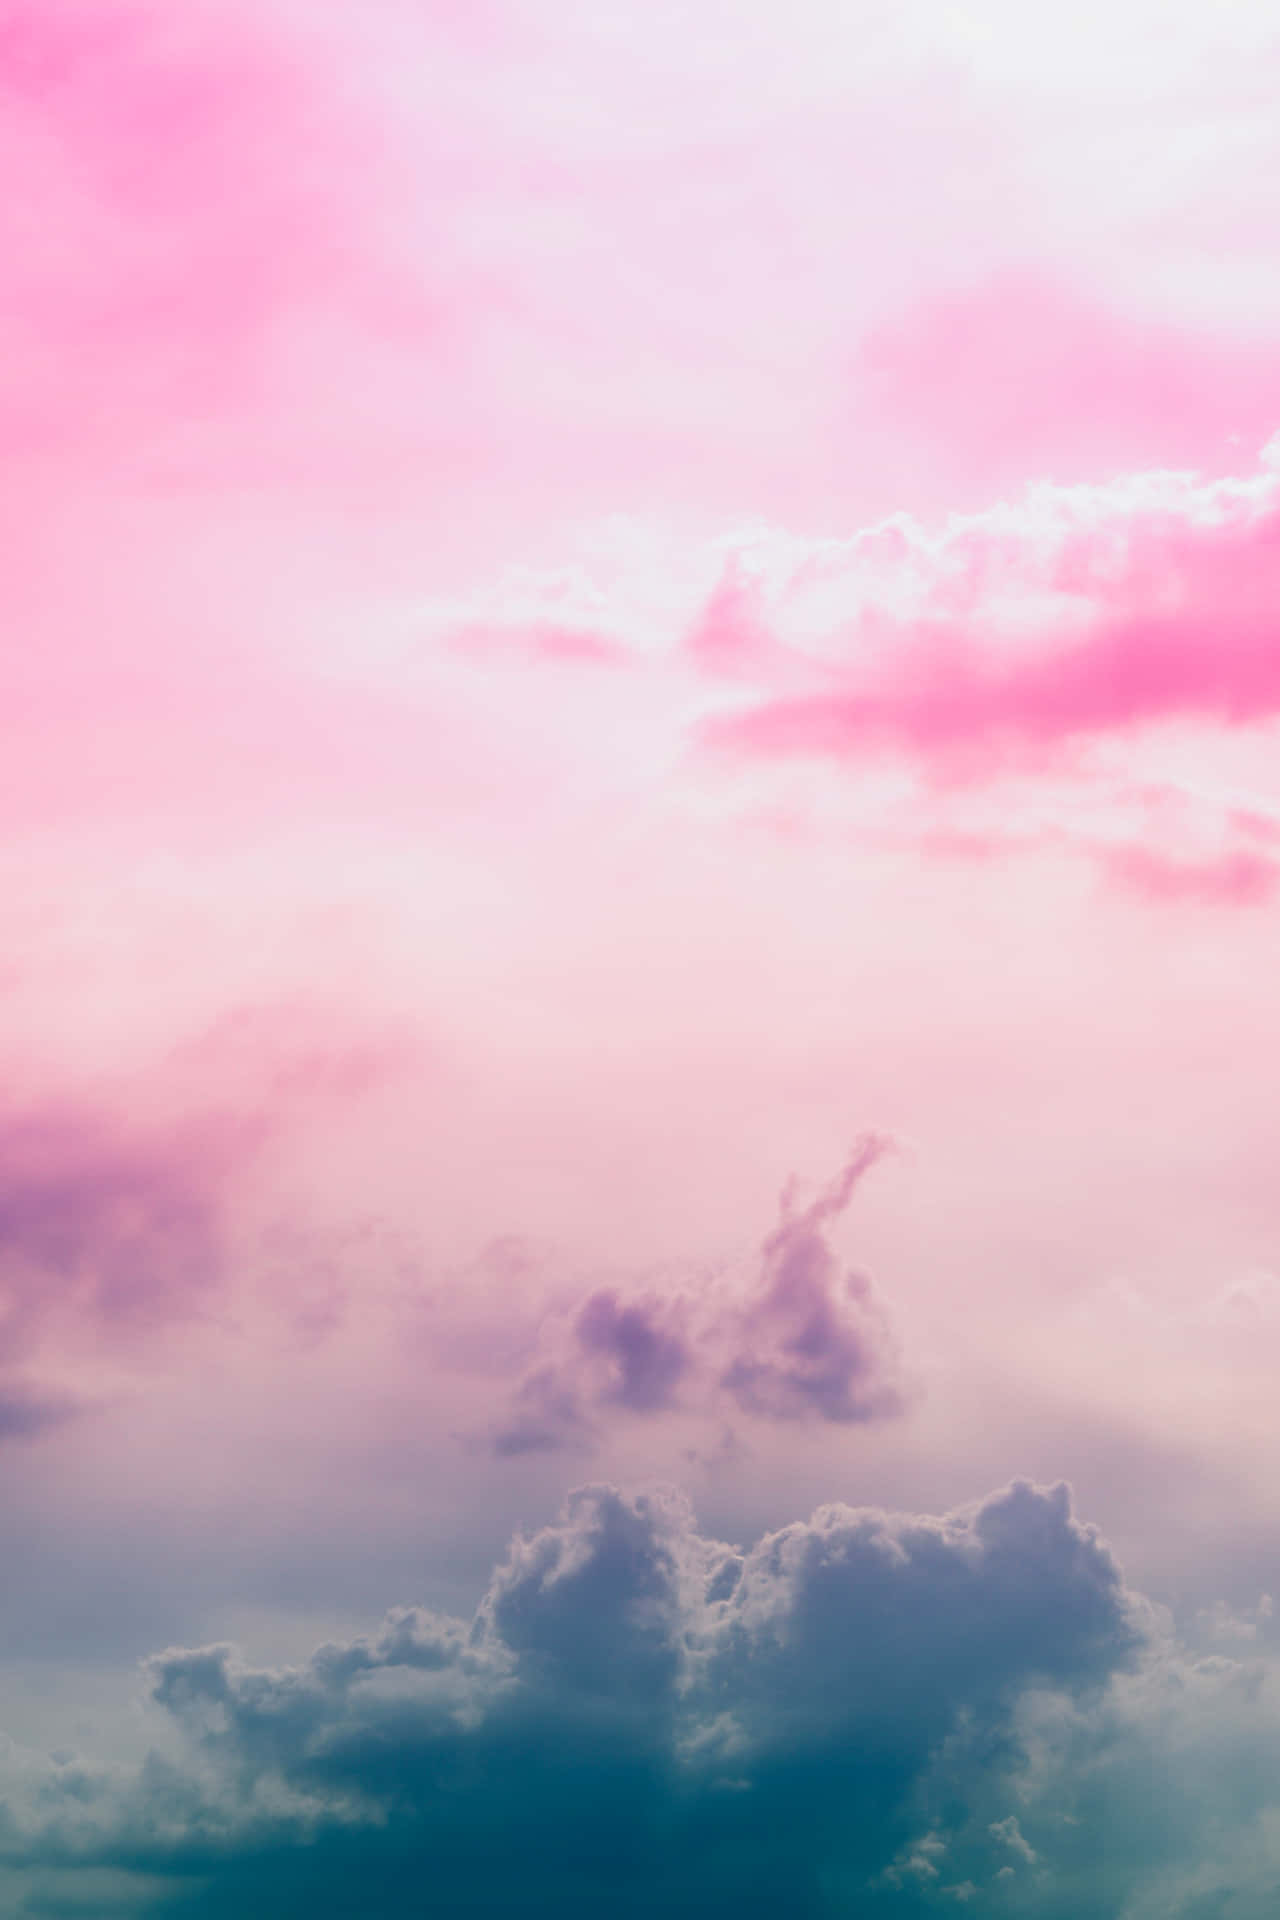 Unahermosa Vista De Nubes Rosas Y Azules En El Cielo. Fondo de pantalla